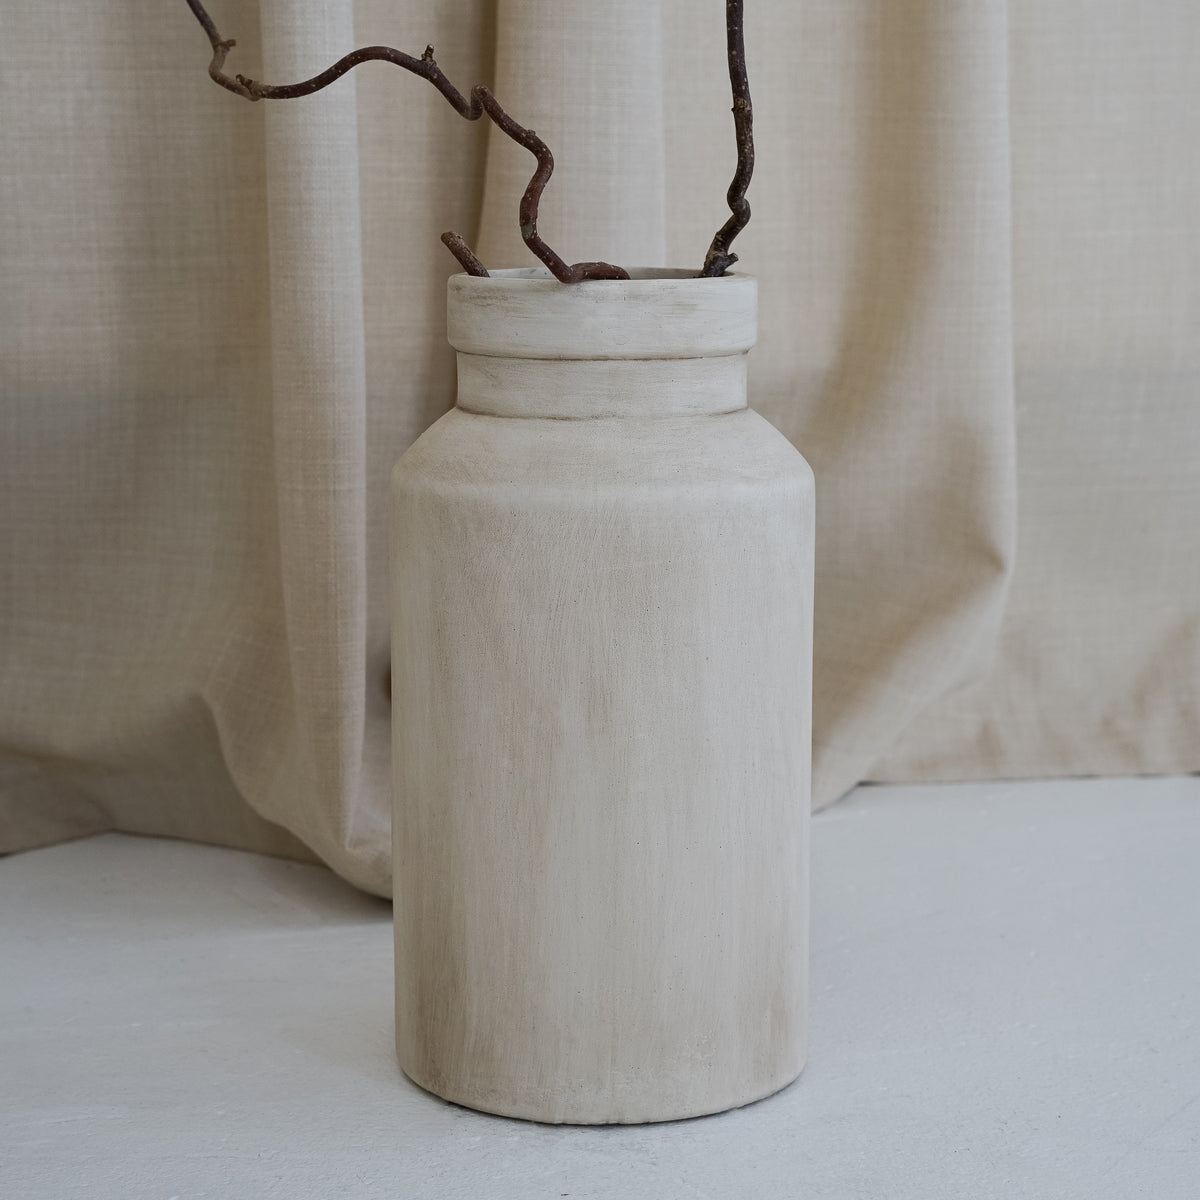 Beige textured ceramic small vase